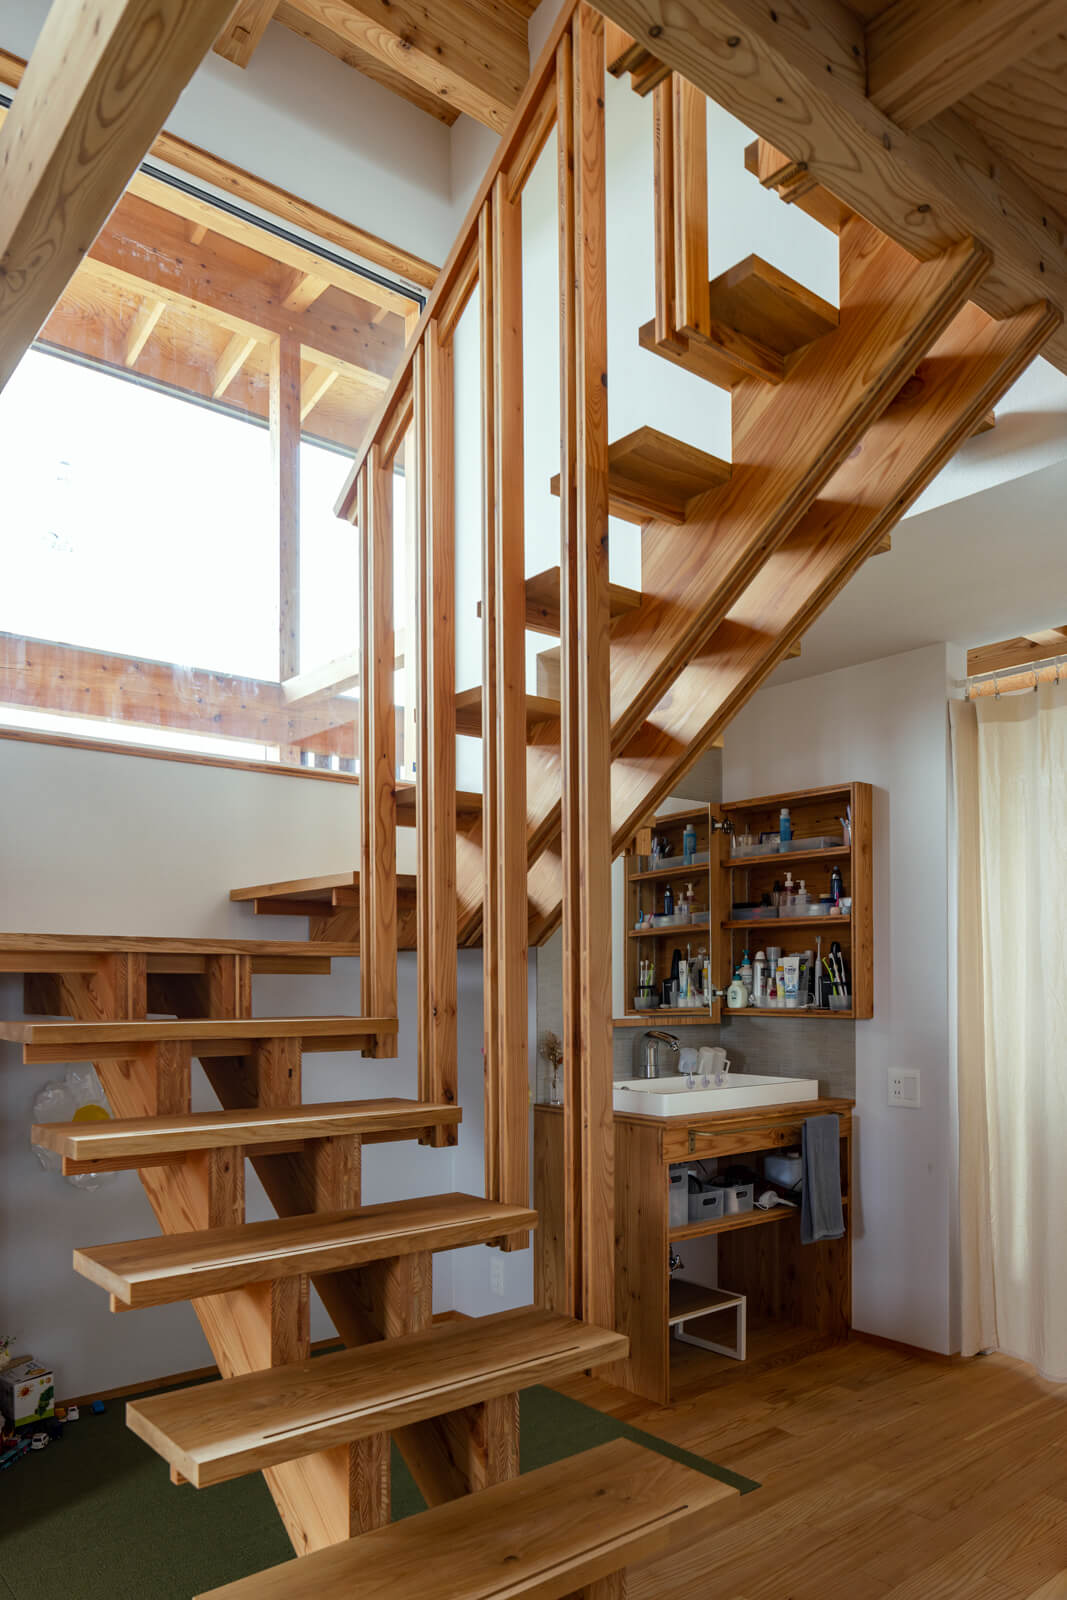 大工さんが一からつくり上げたカラマツパネルの木製階段。段板と桁が美しく端正に組み上げられているのが匠の技